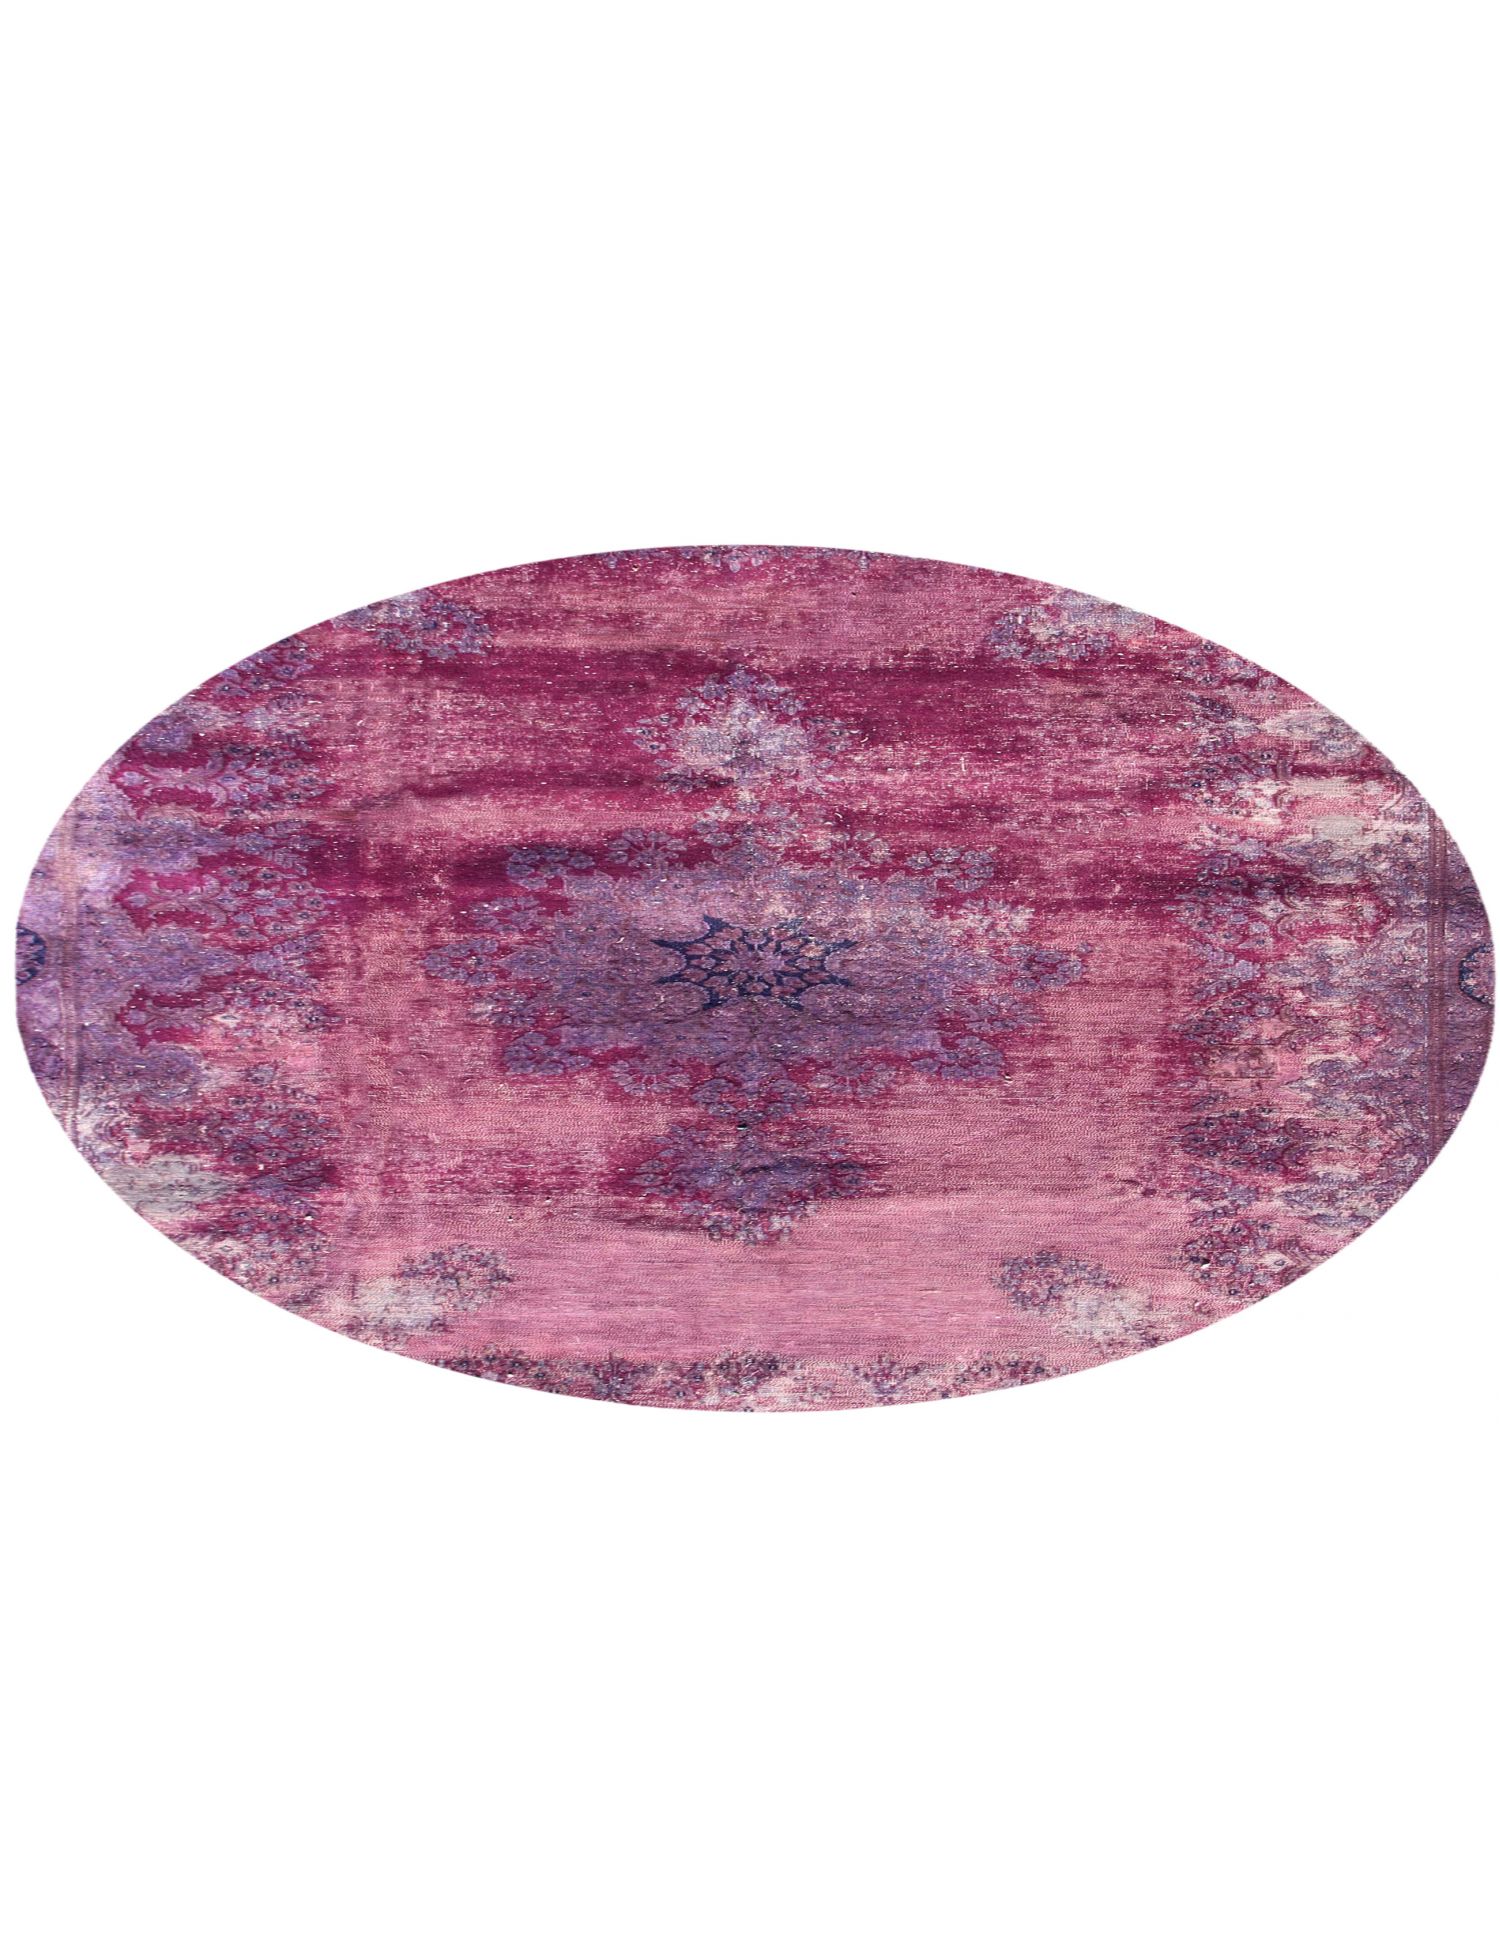 Rund  Vintage Teppich  lila <br/>230 x 230 cm